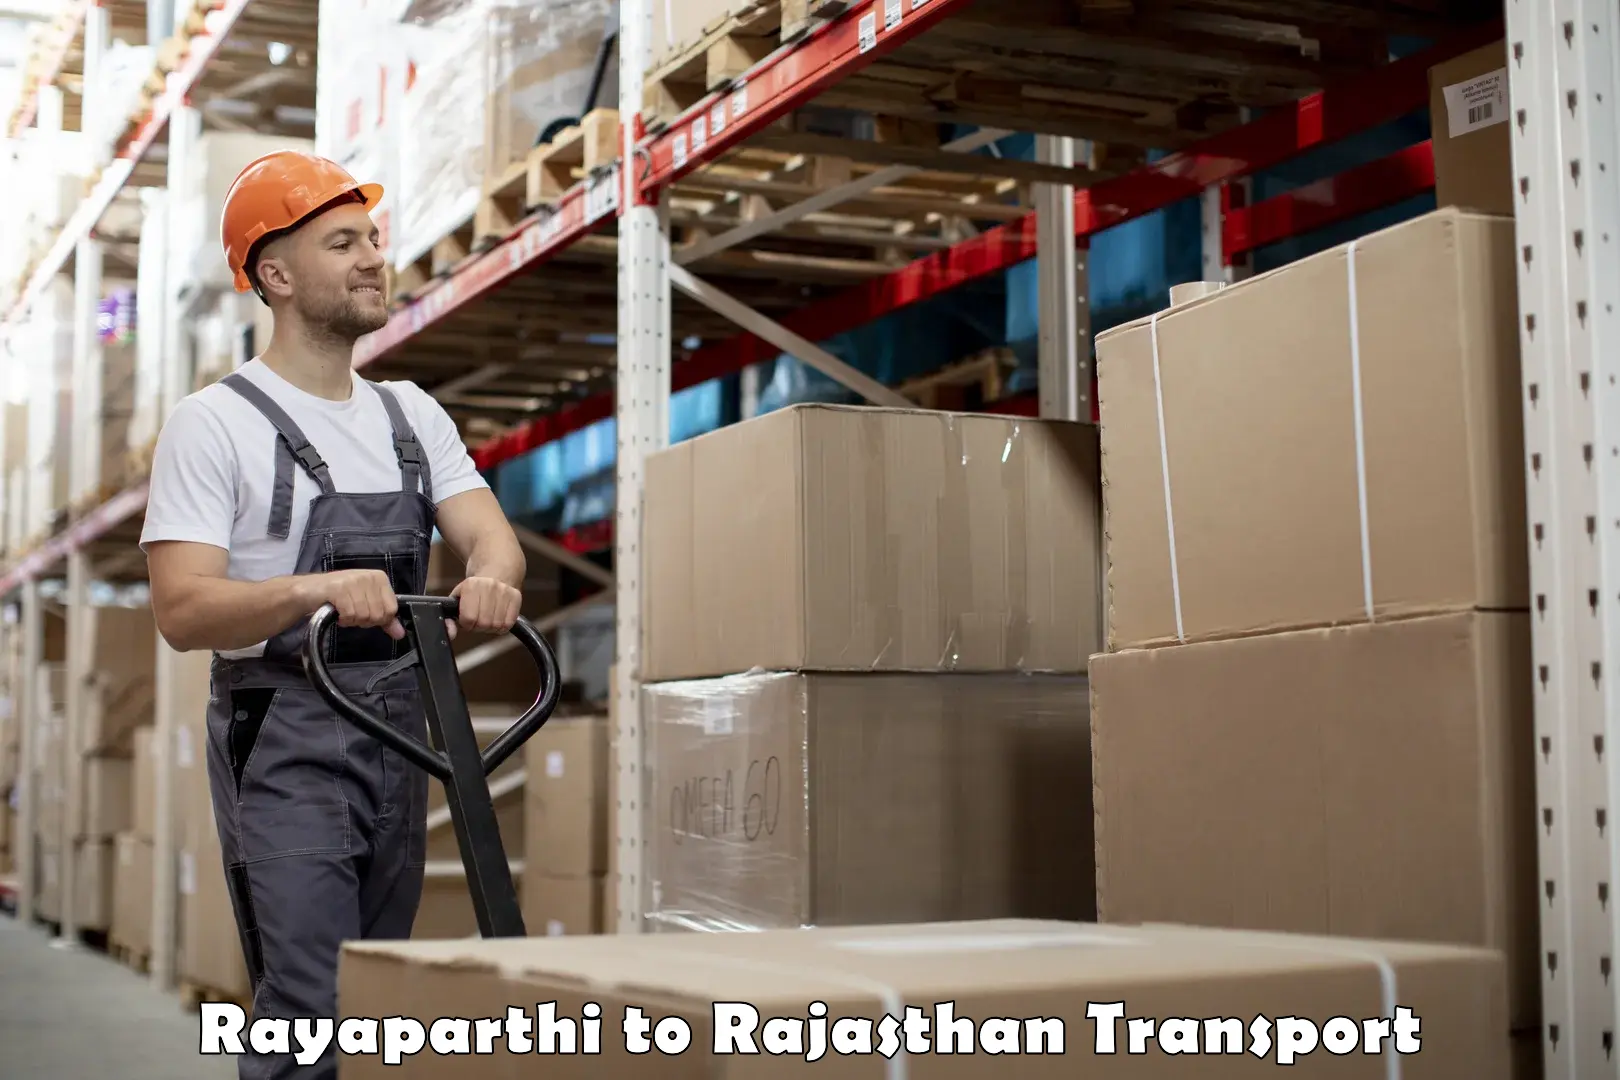 Daily transport service Rayaparthi to Rupbas